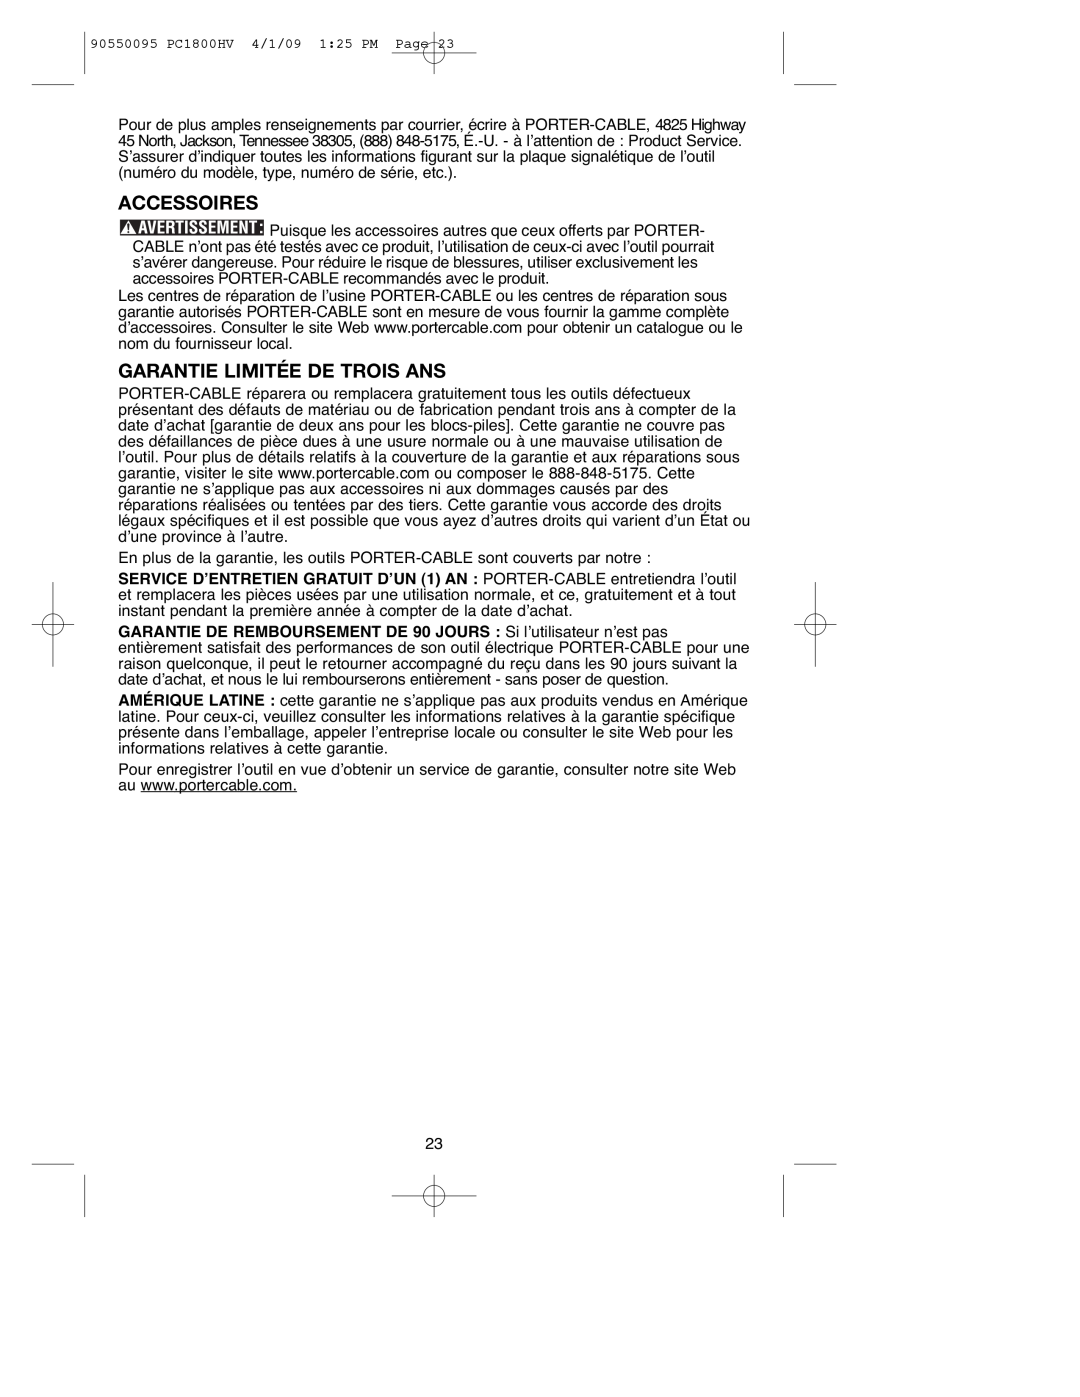 Porter-Cable PC1800HV, 90550095 instruction manual Accessoires, Garantie Limitée De Trois Ans 